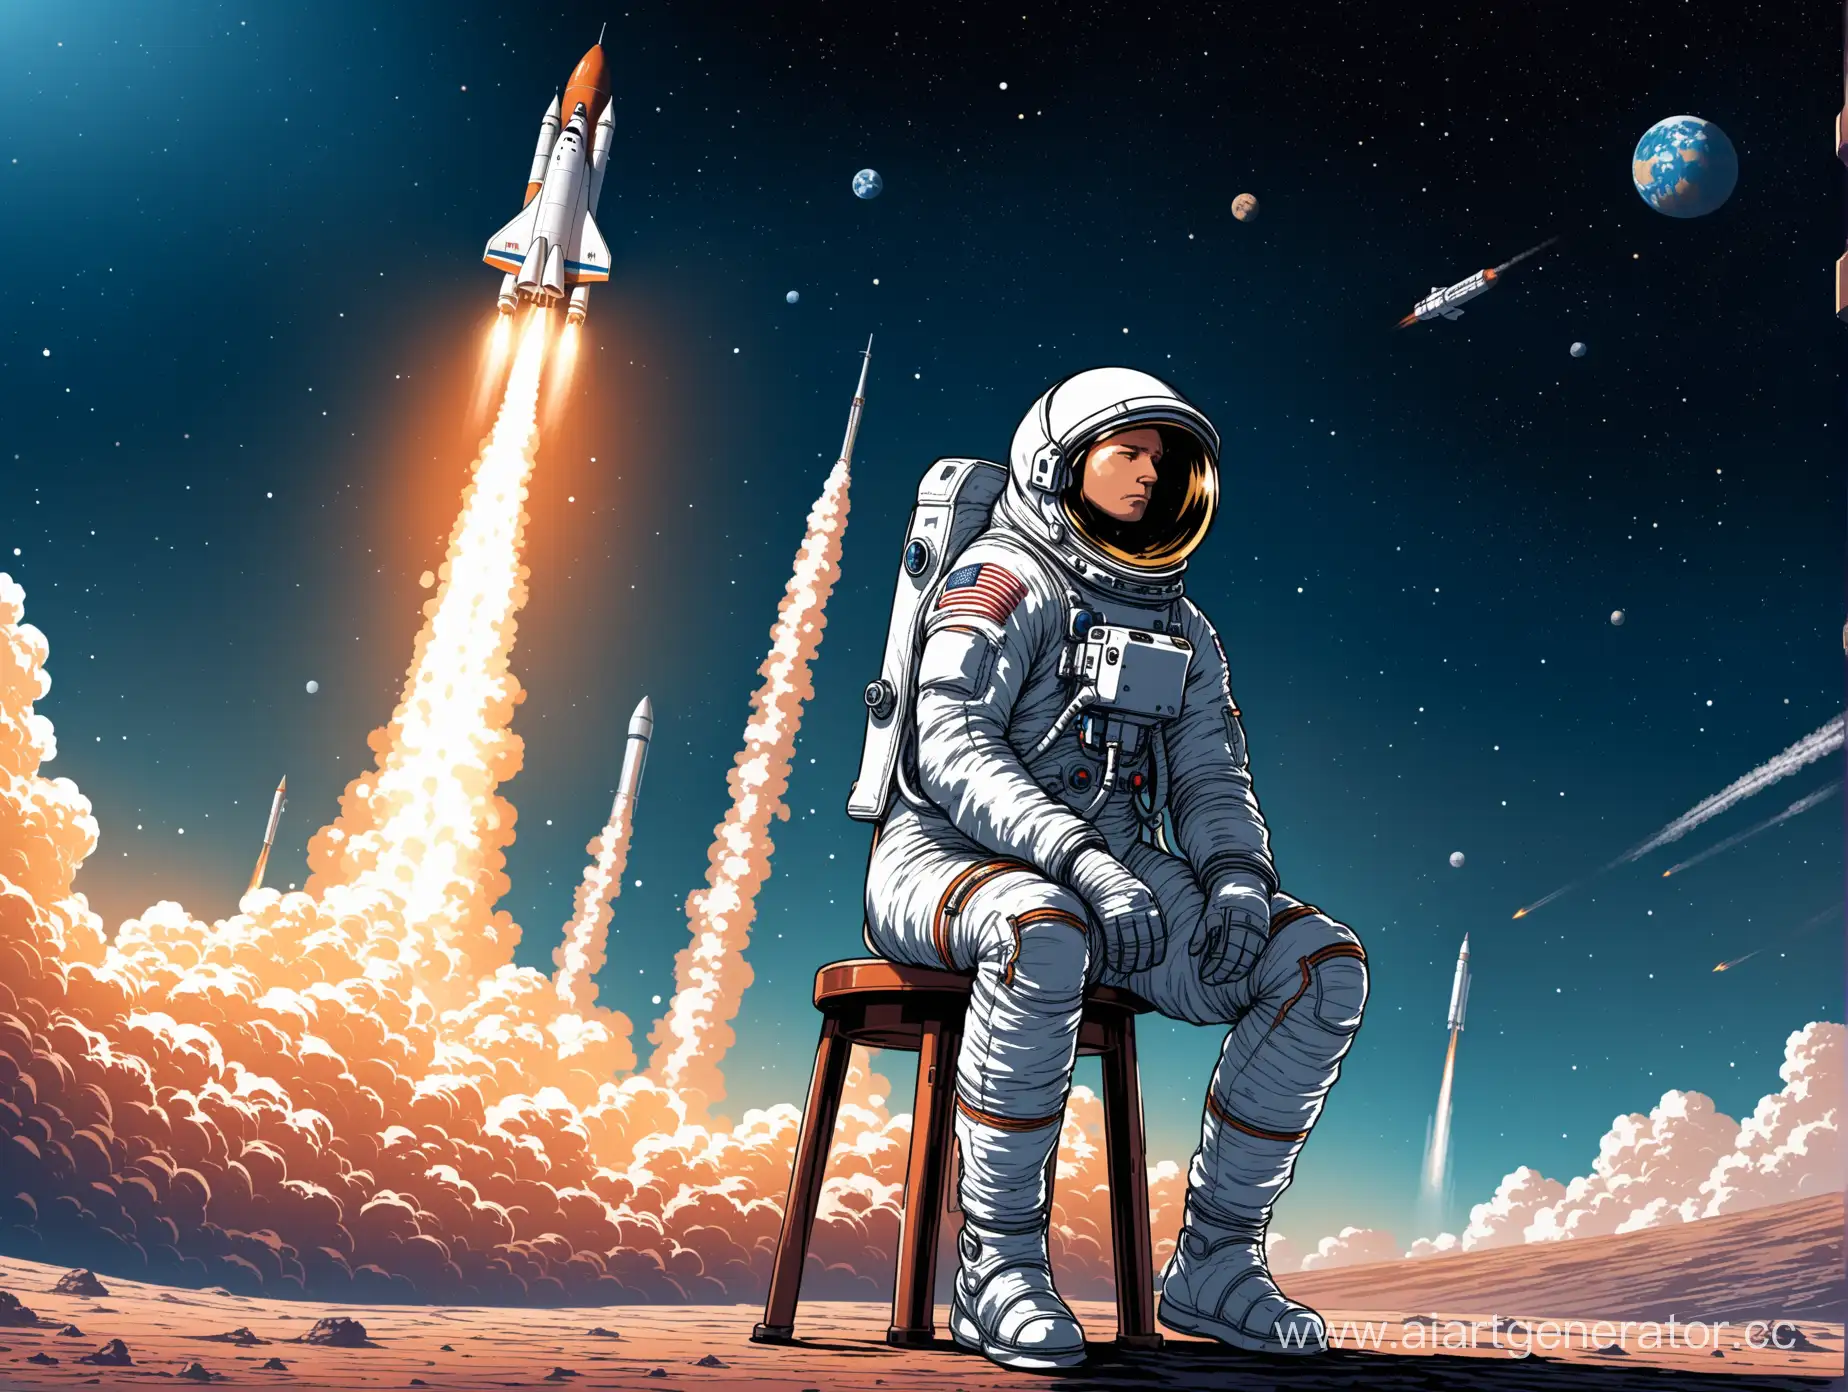 Космонавт приуныл, сидя на табуретке, на фоне взлетающей ракеты.